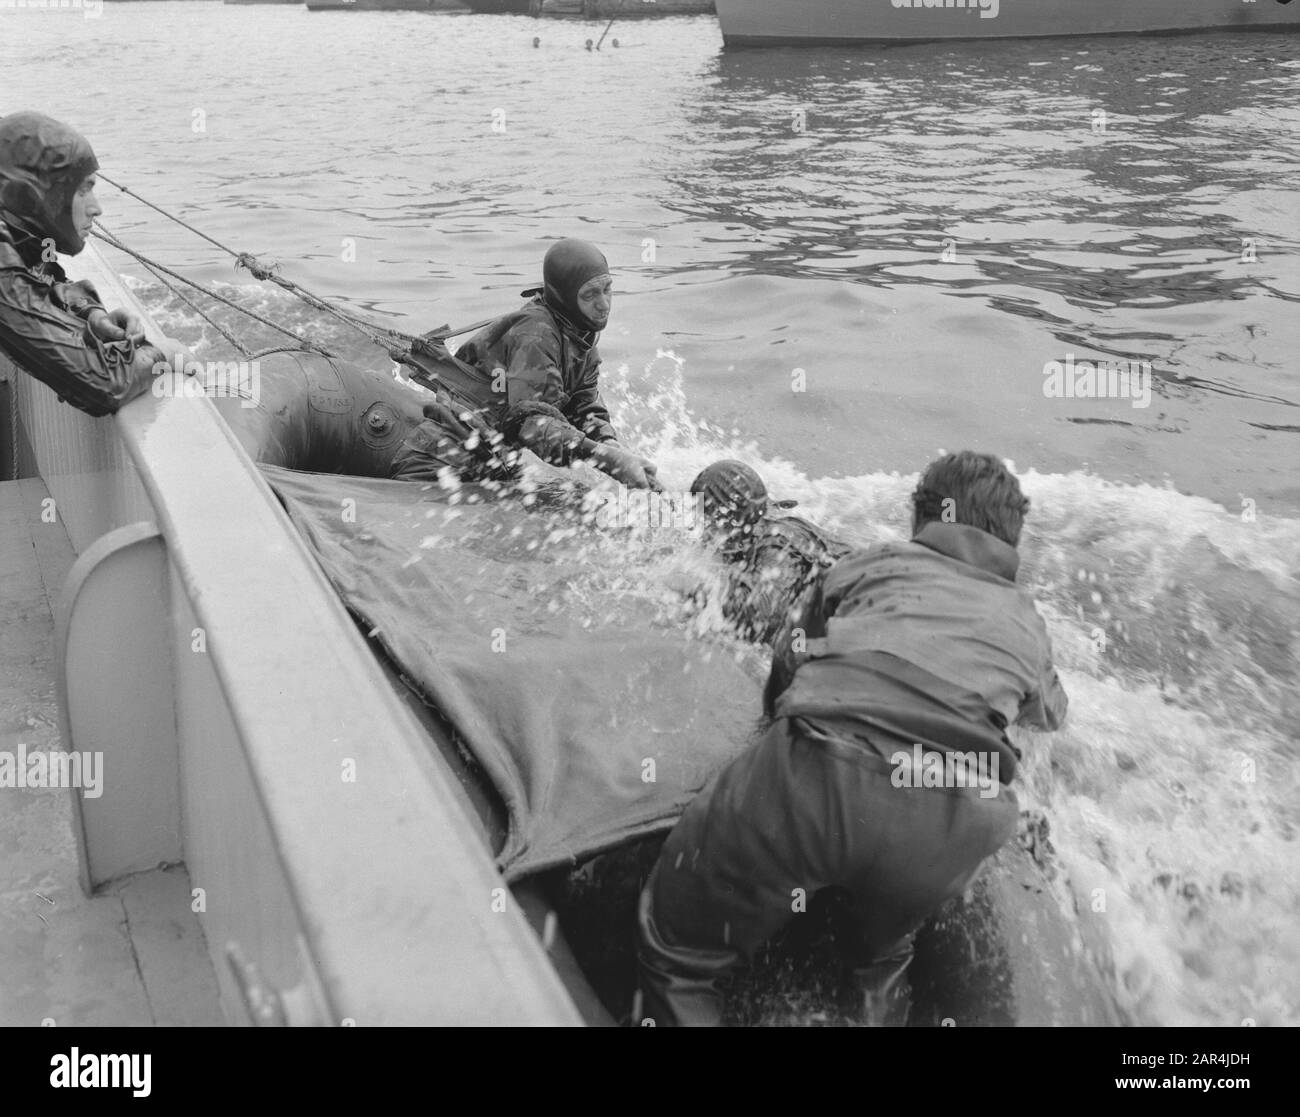 Démonstration de plongée Amsterdam durant la flotte Schouw, frogvorsman est pêché Date: 6 septembre 1958 lieu: Amsterdam, Noord-Holland mots clés: Divers, marine, leetschouwen Banque D'Images